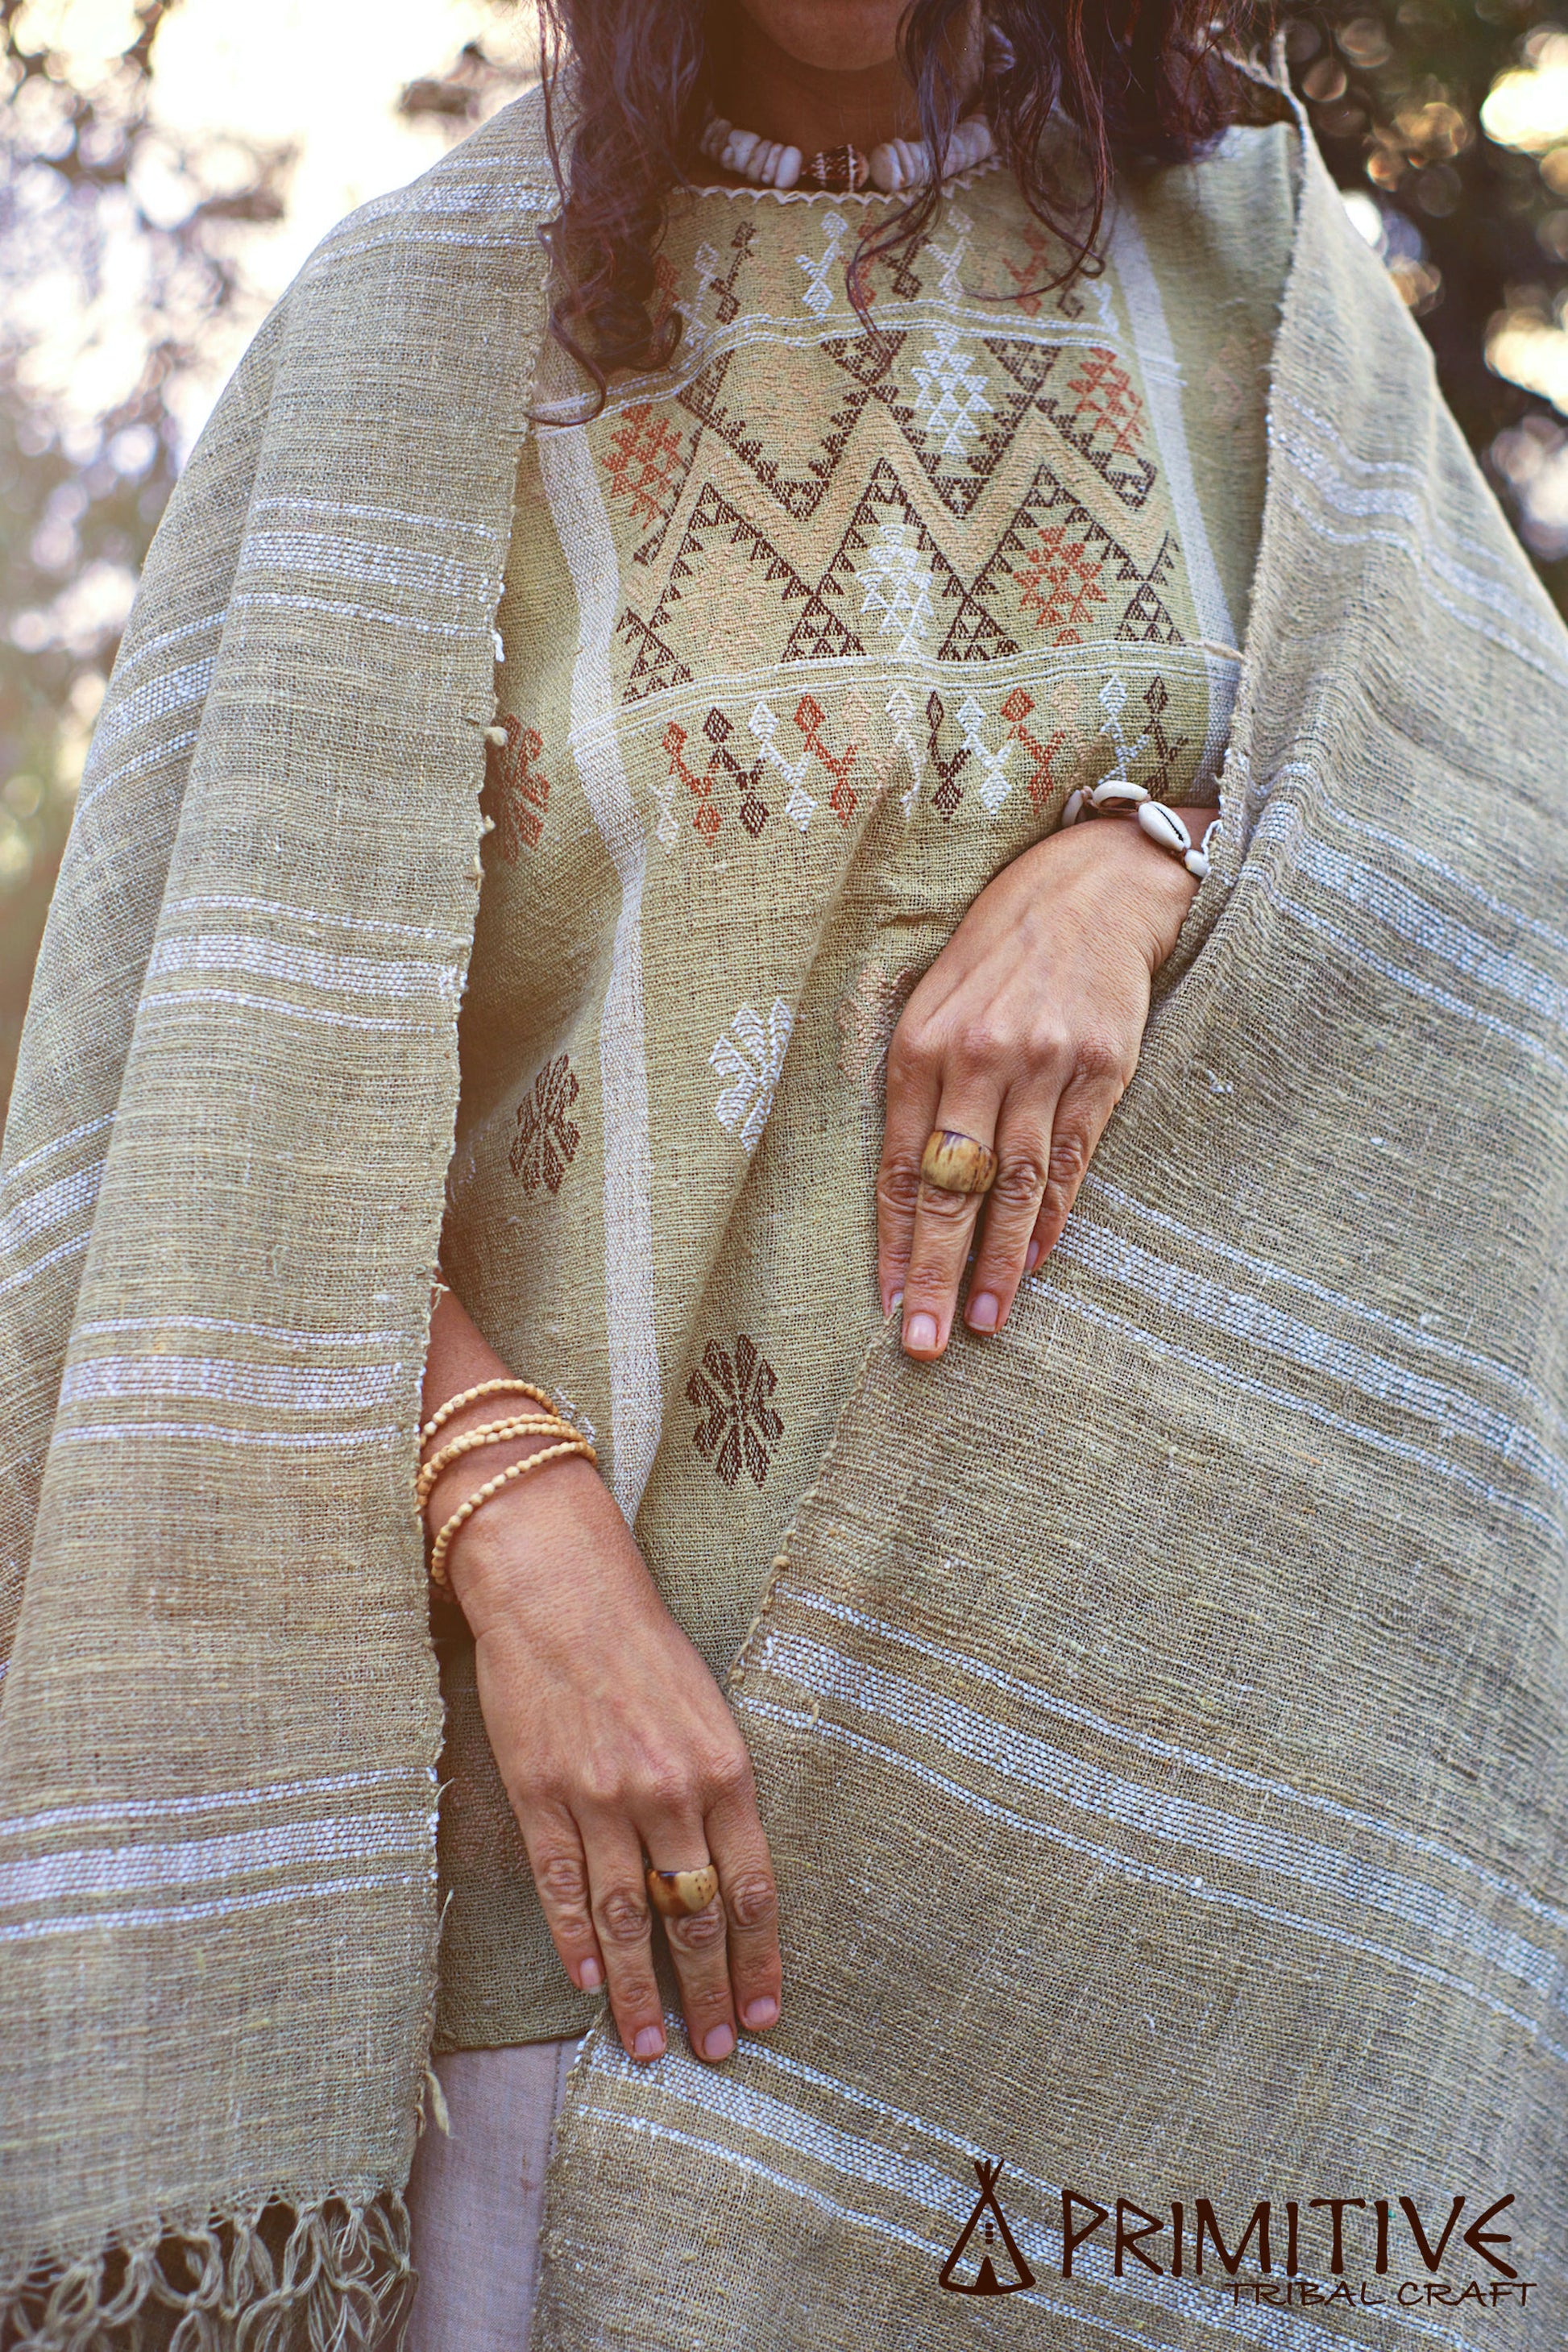 Wild Green Cotton Handspun Handloom Shawl with Patterns